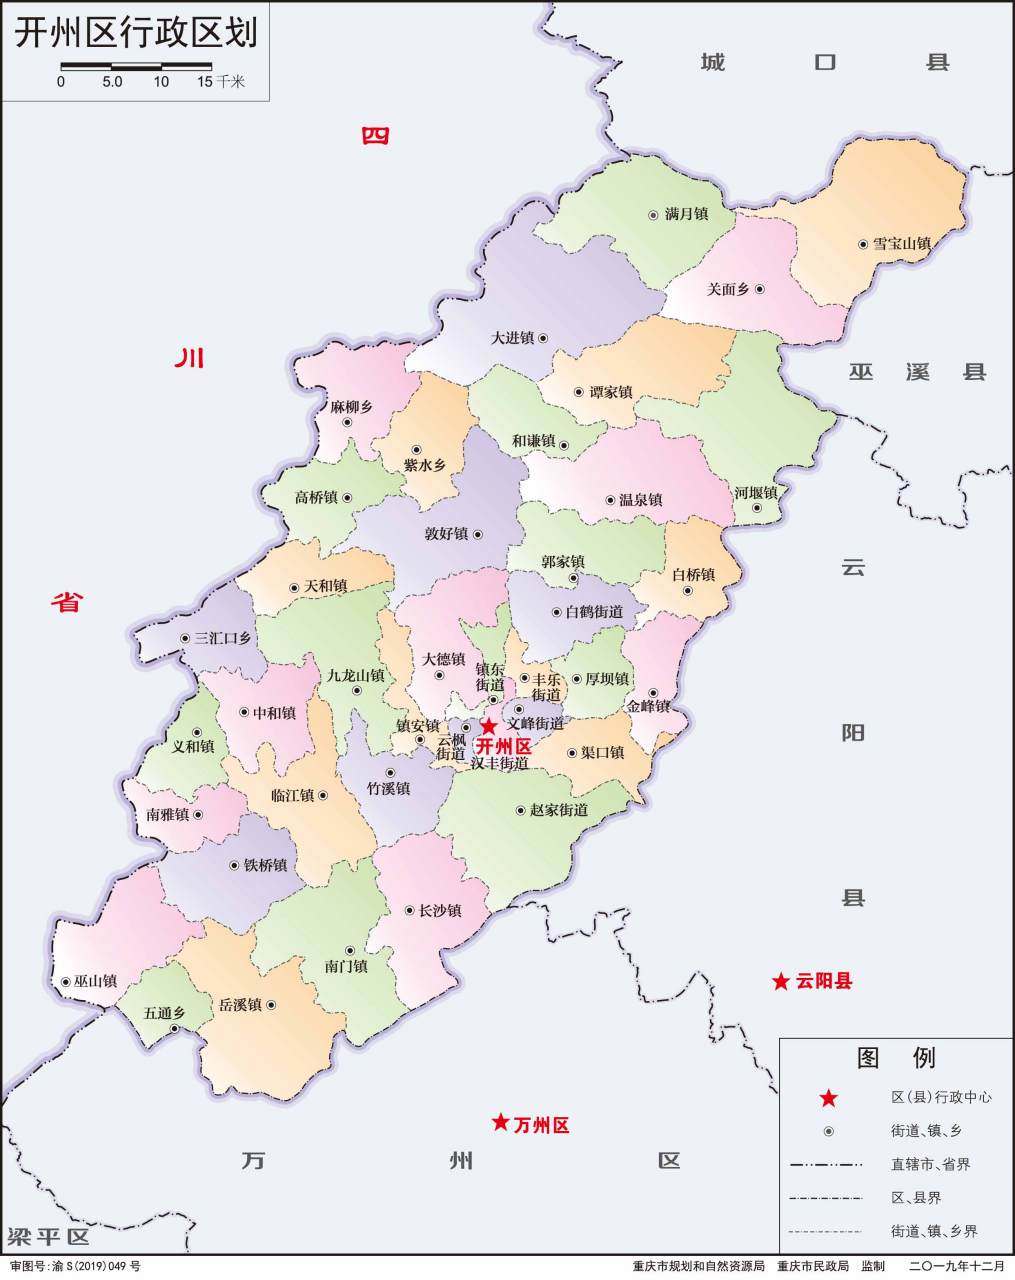 很早就发现,山西省和重庆市开州区,它们的地图轮廓很相似呢,像一片